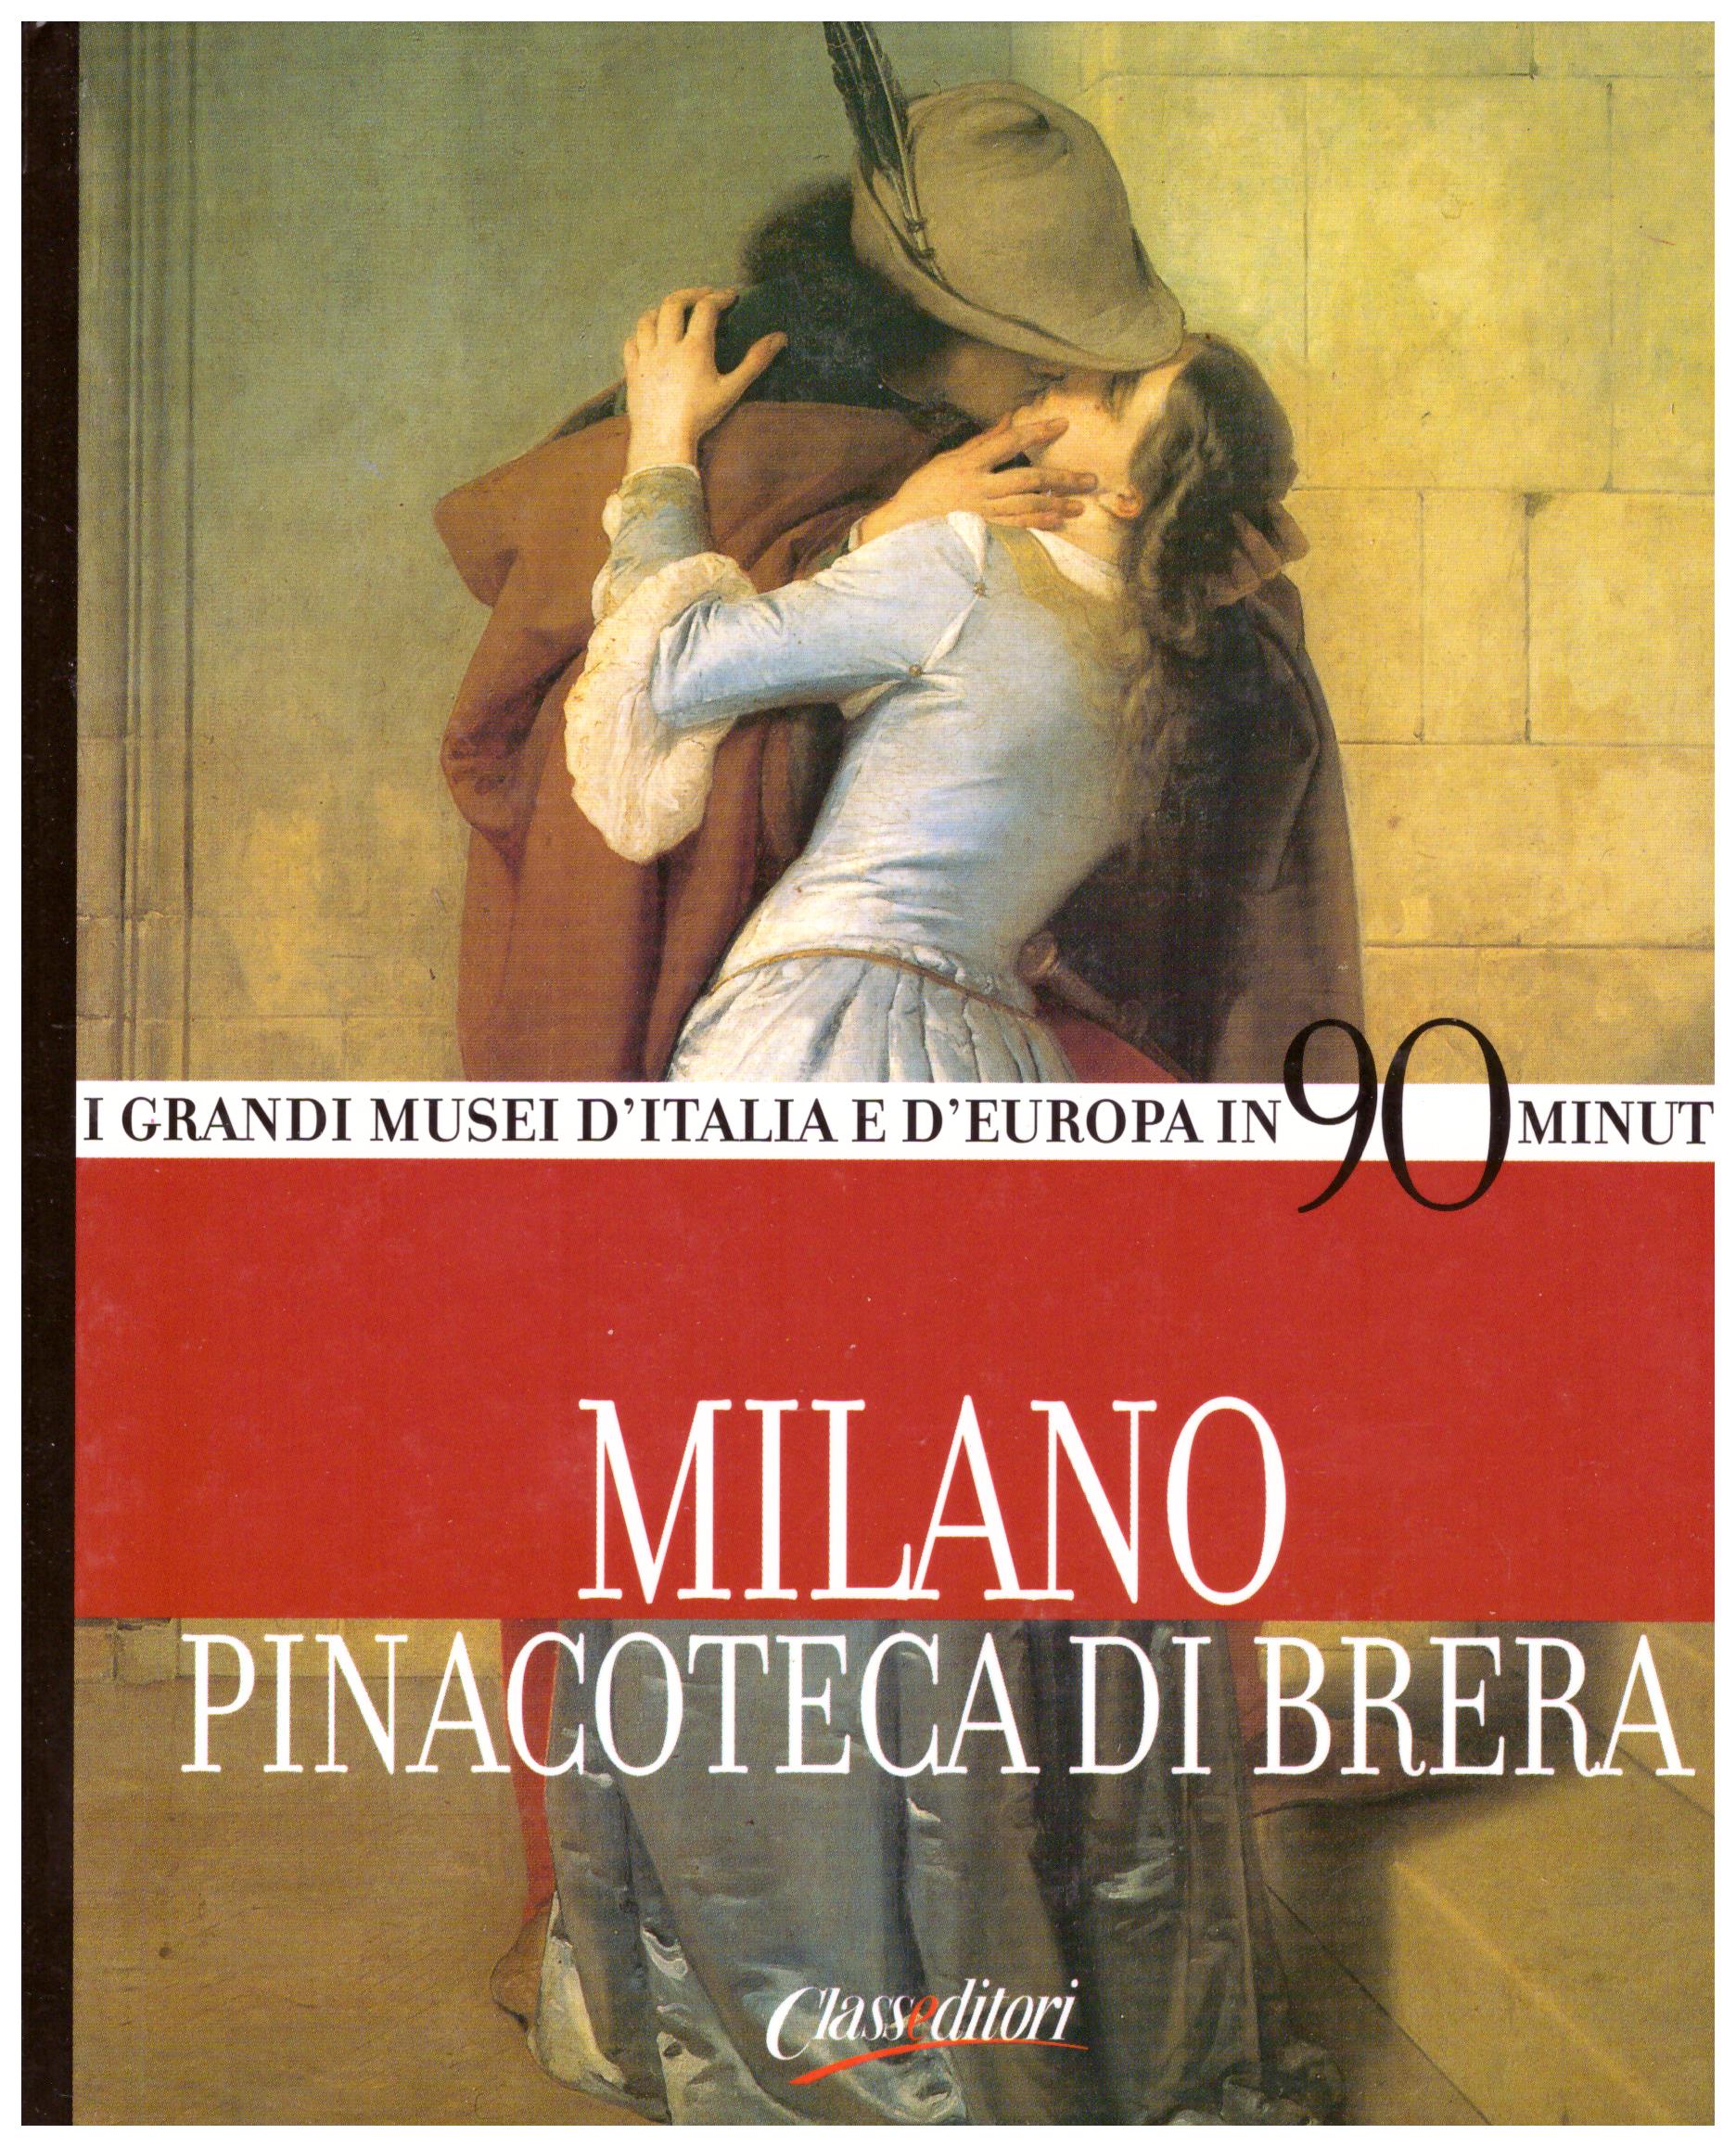 Titolo: I grandi musei d'Italia e d'Europa in 90 minuti, Milano Pinacoteca di Brera   Autore: AA.VV.  Editore: Classeditori, 2004